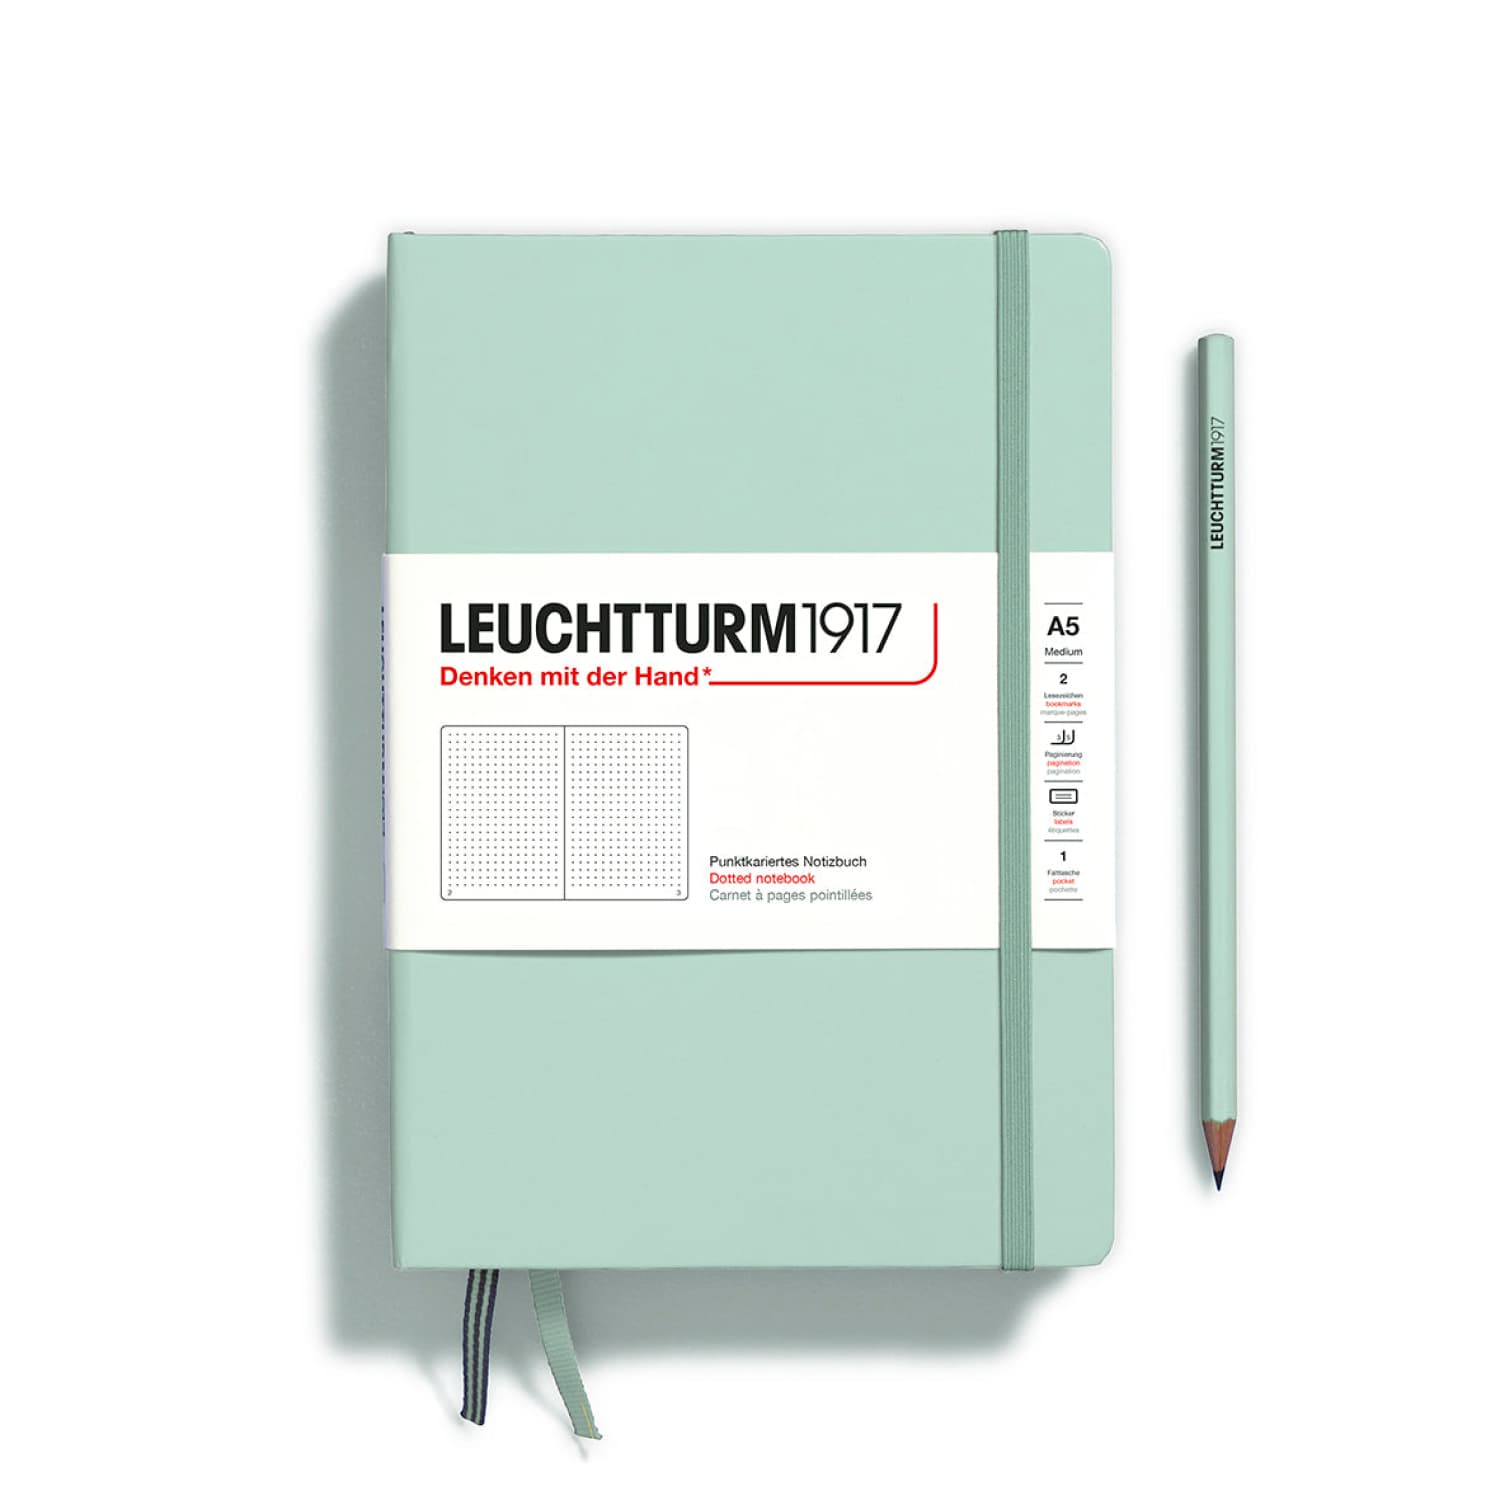 Leuchtturm1917 Bullet Journal Notebook Review - the paper kind